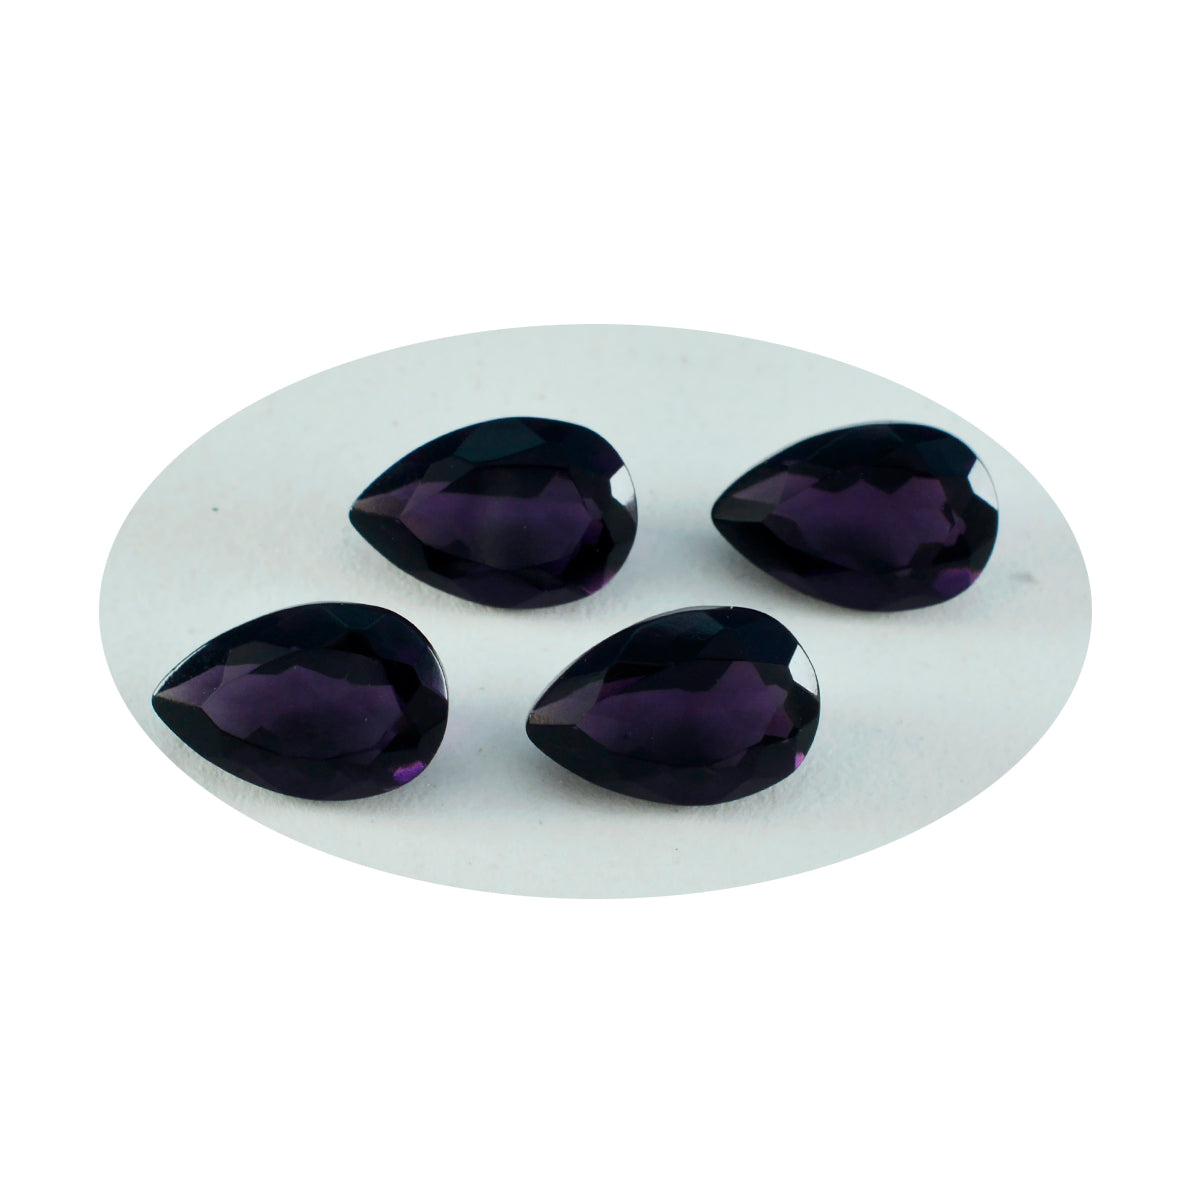 Riyogems 1 pieza de amatista púrpura CZ facetada 10x14 mm forma de pera A+1 piedra suelta de calidad